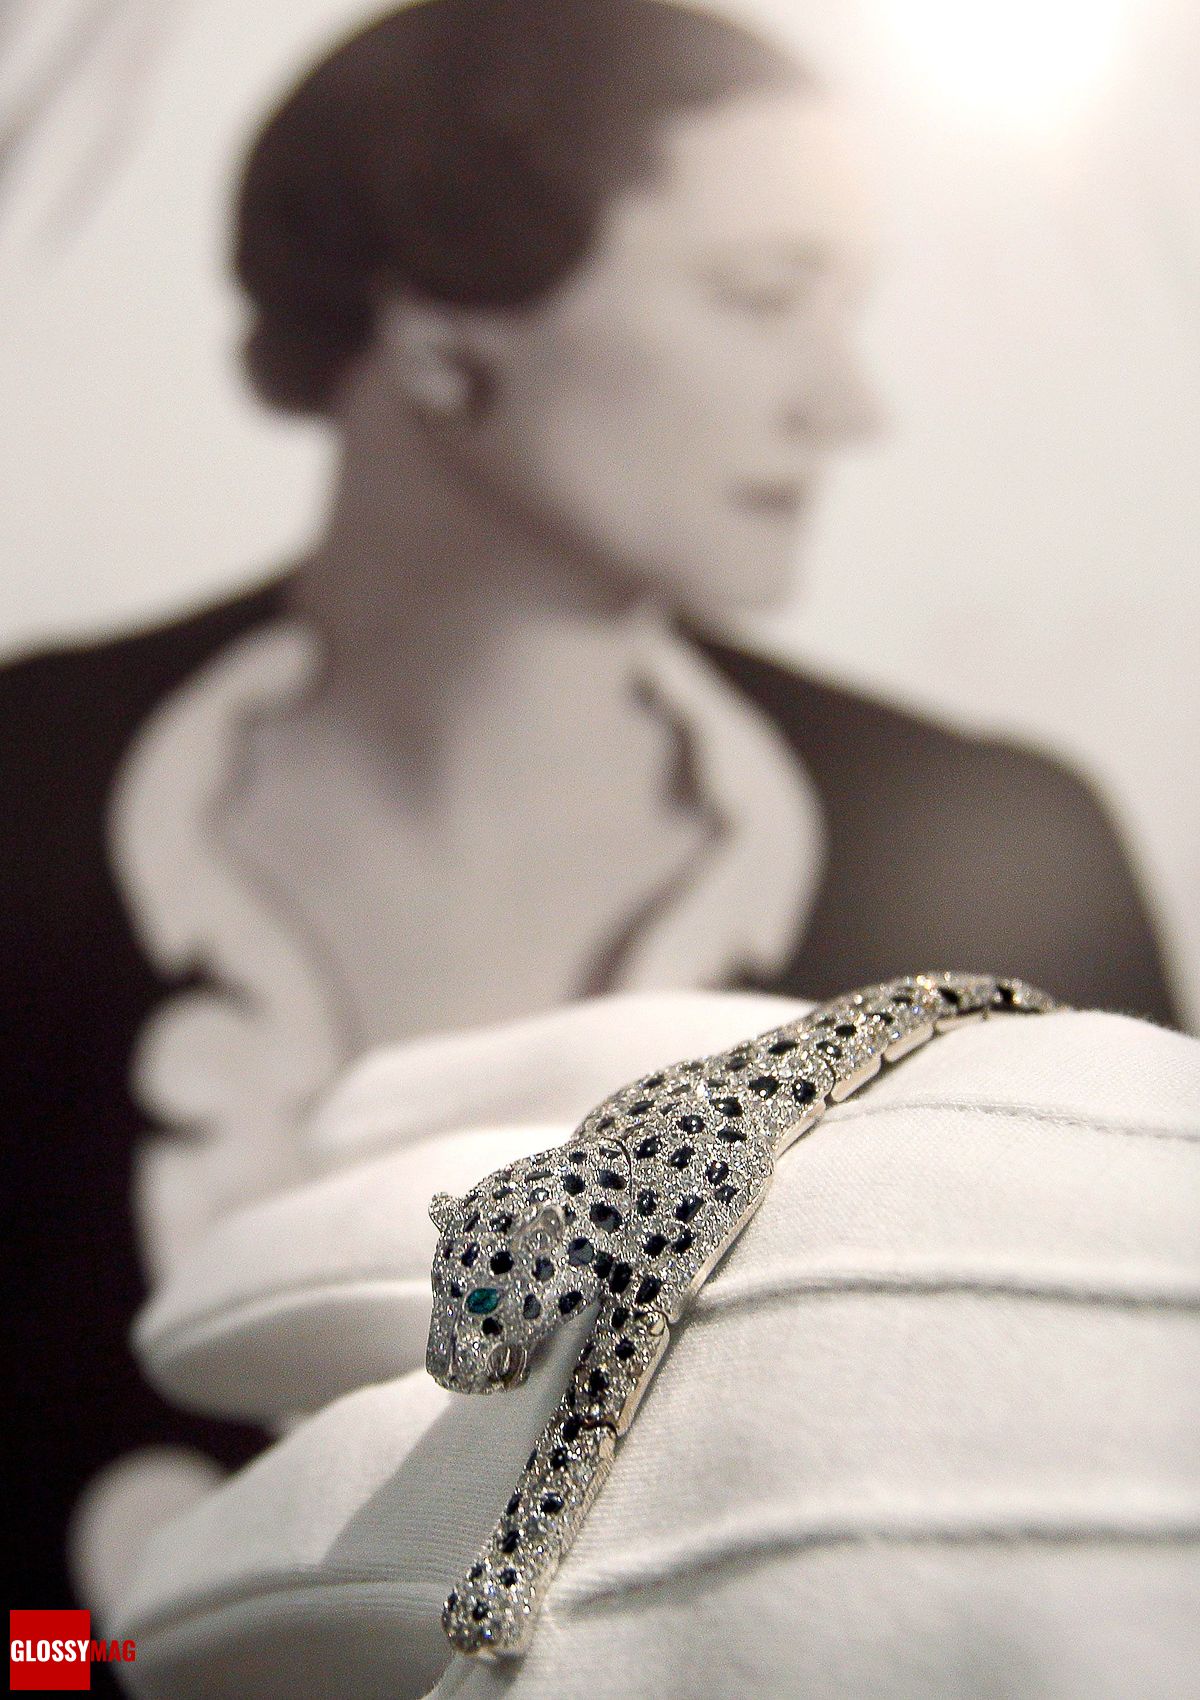 История драгоценностей Уоллис Симпсон: браслет Panther от Cartier, фото 1